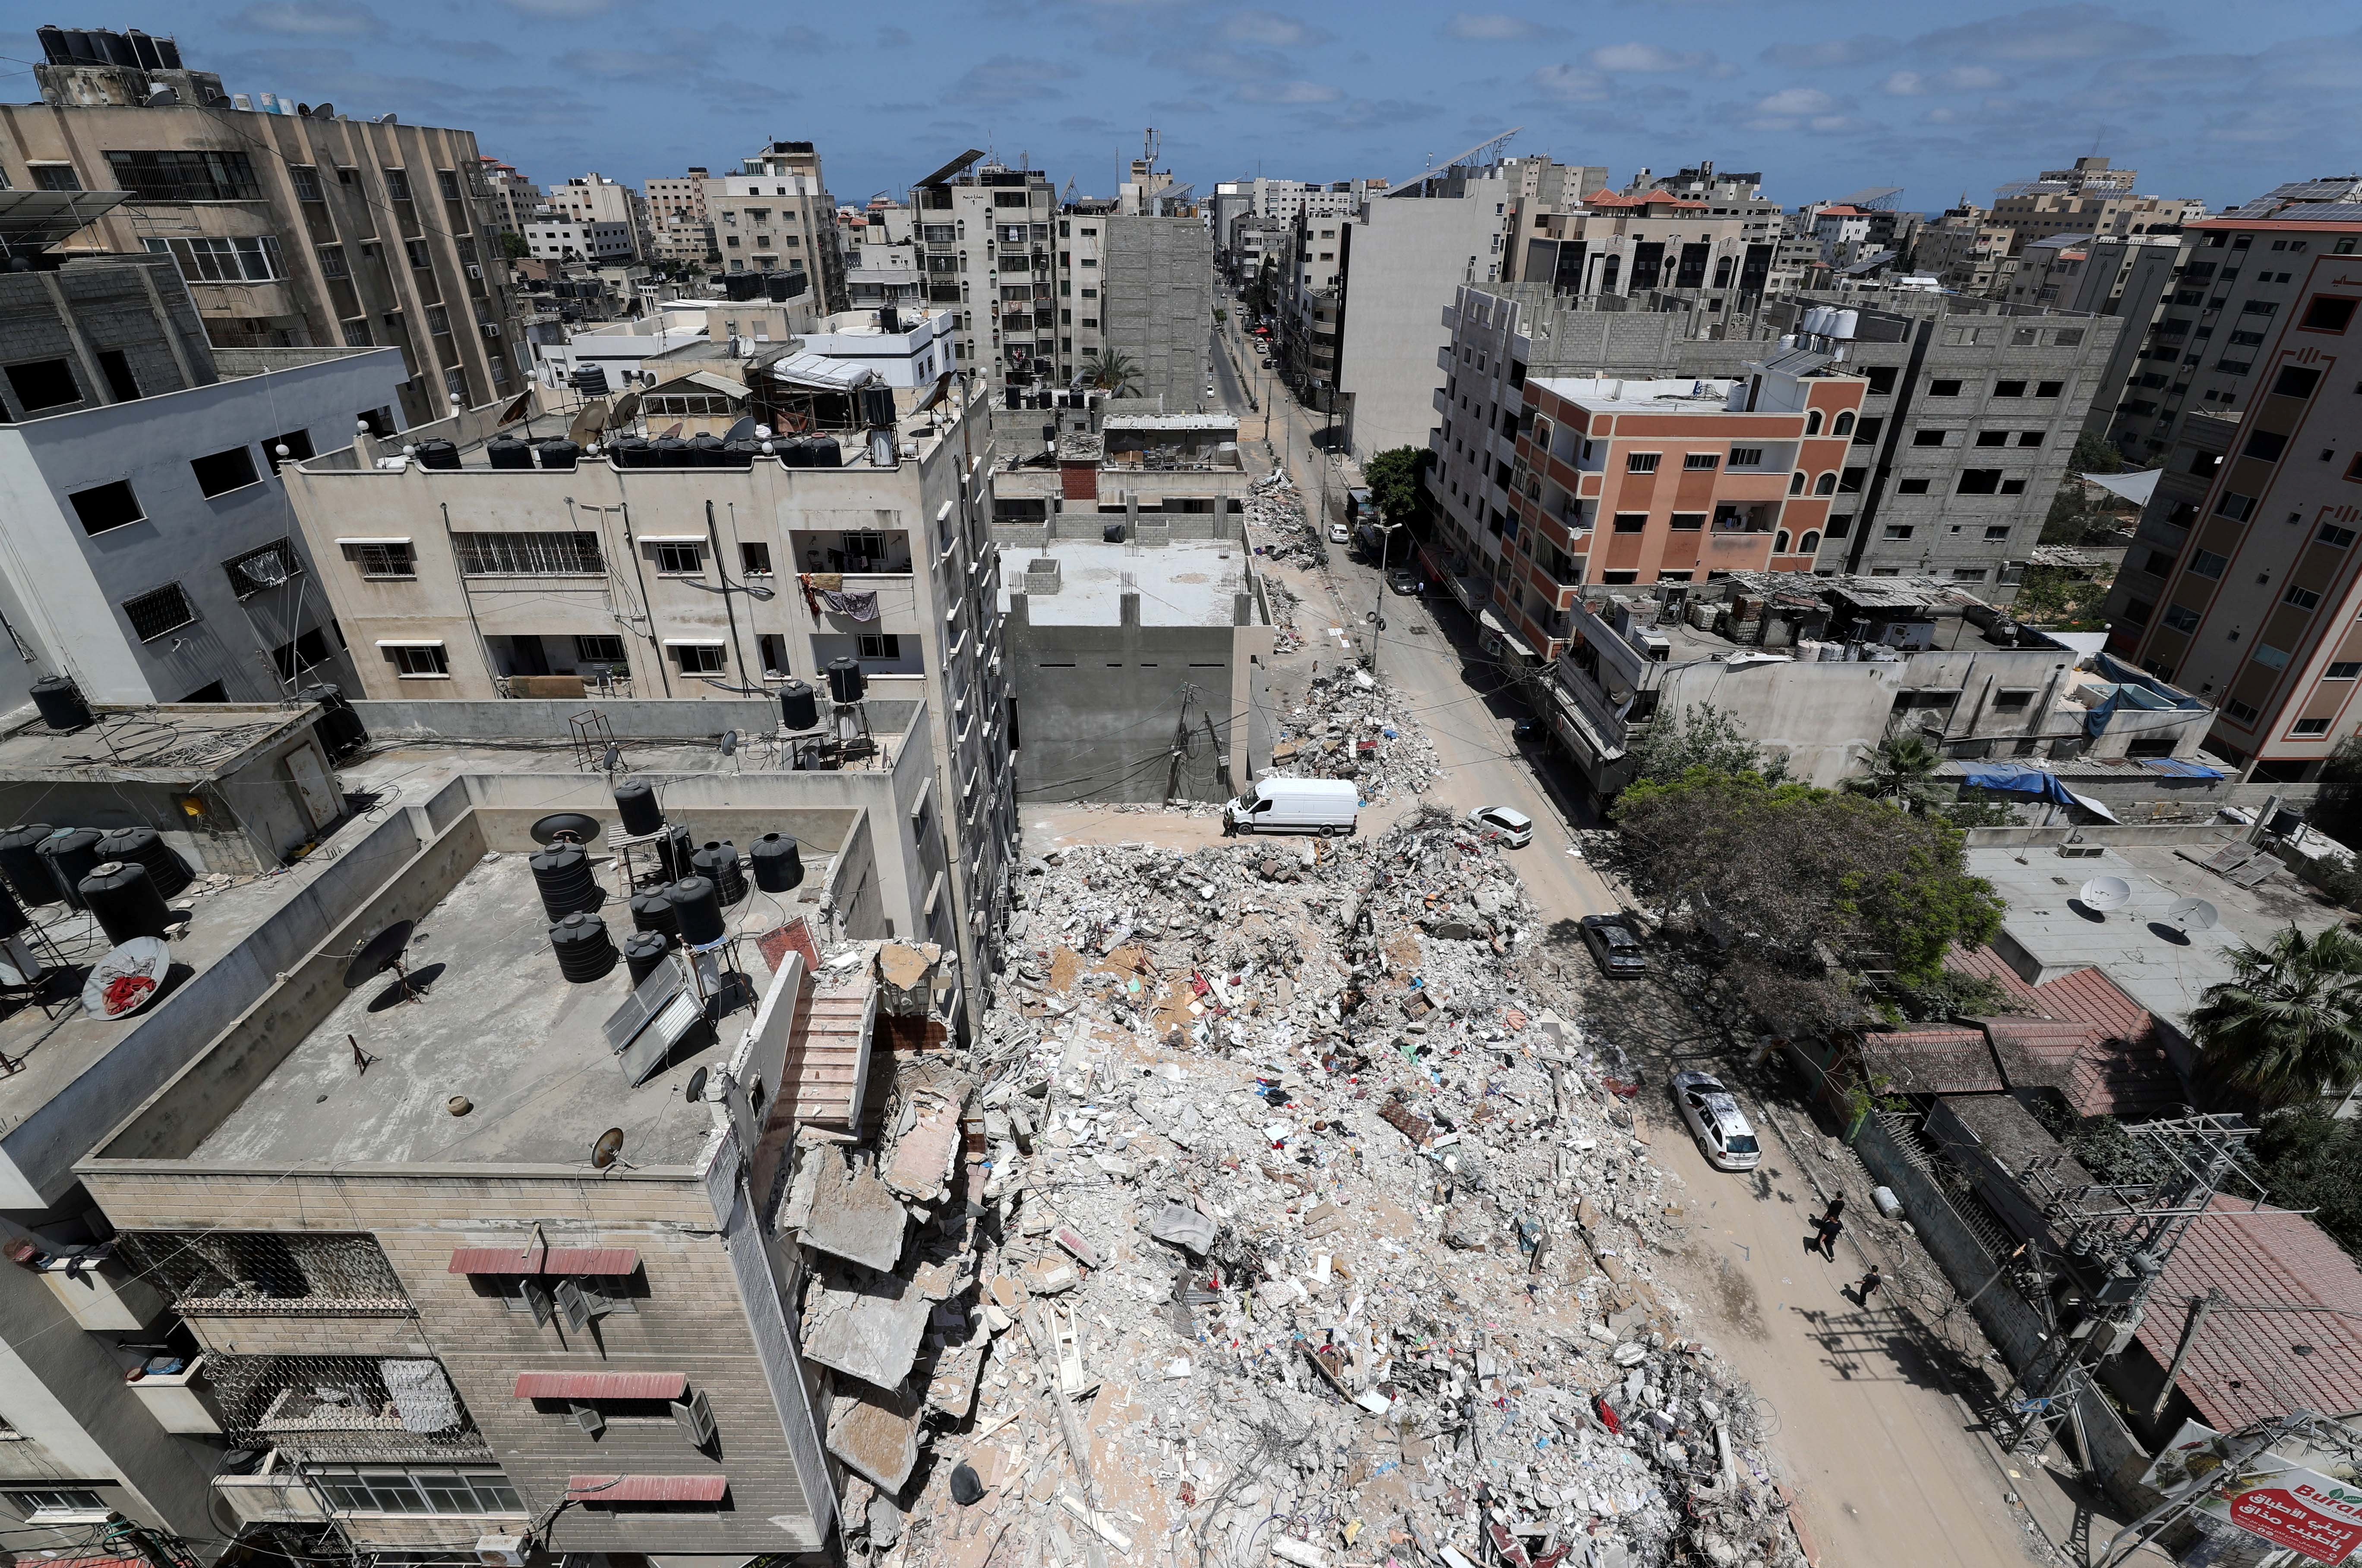 Se reanuda la violencia en Gaza pese a la presión para aplicar un alto al fuego